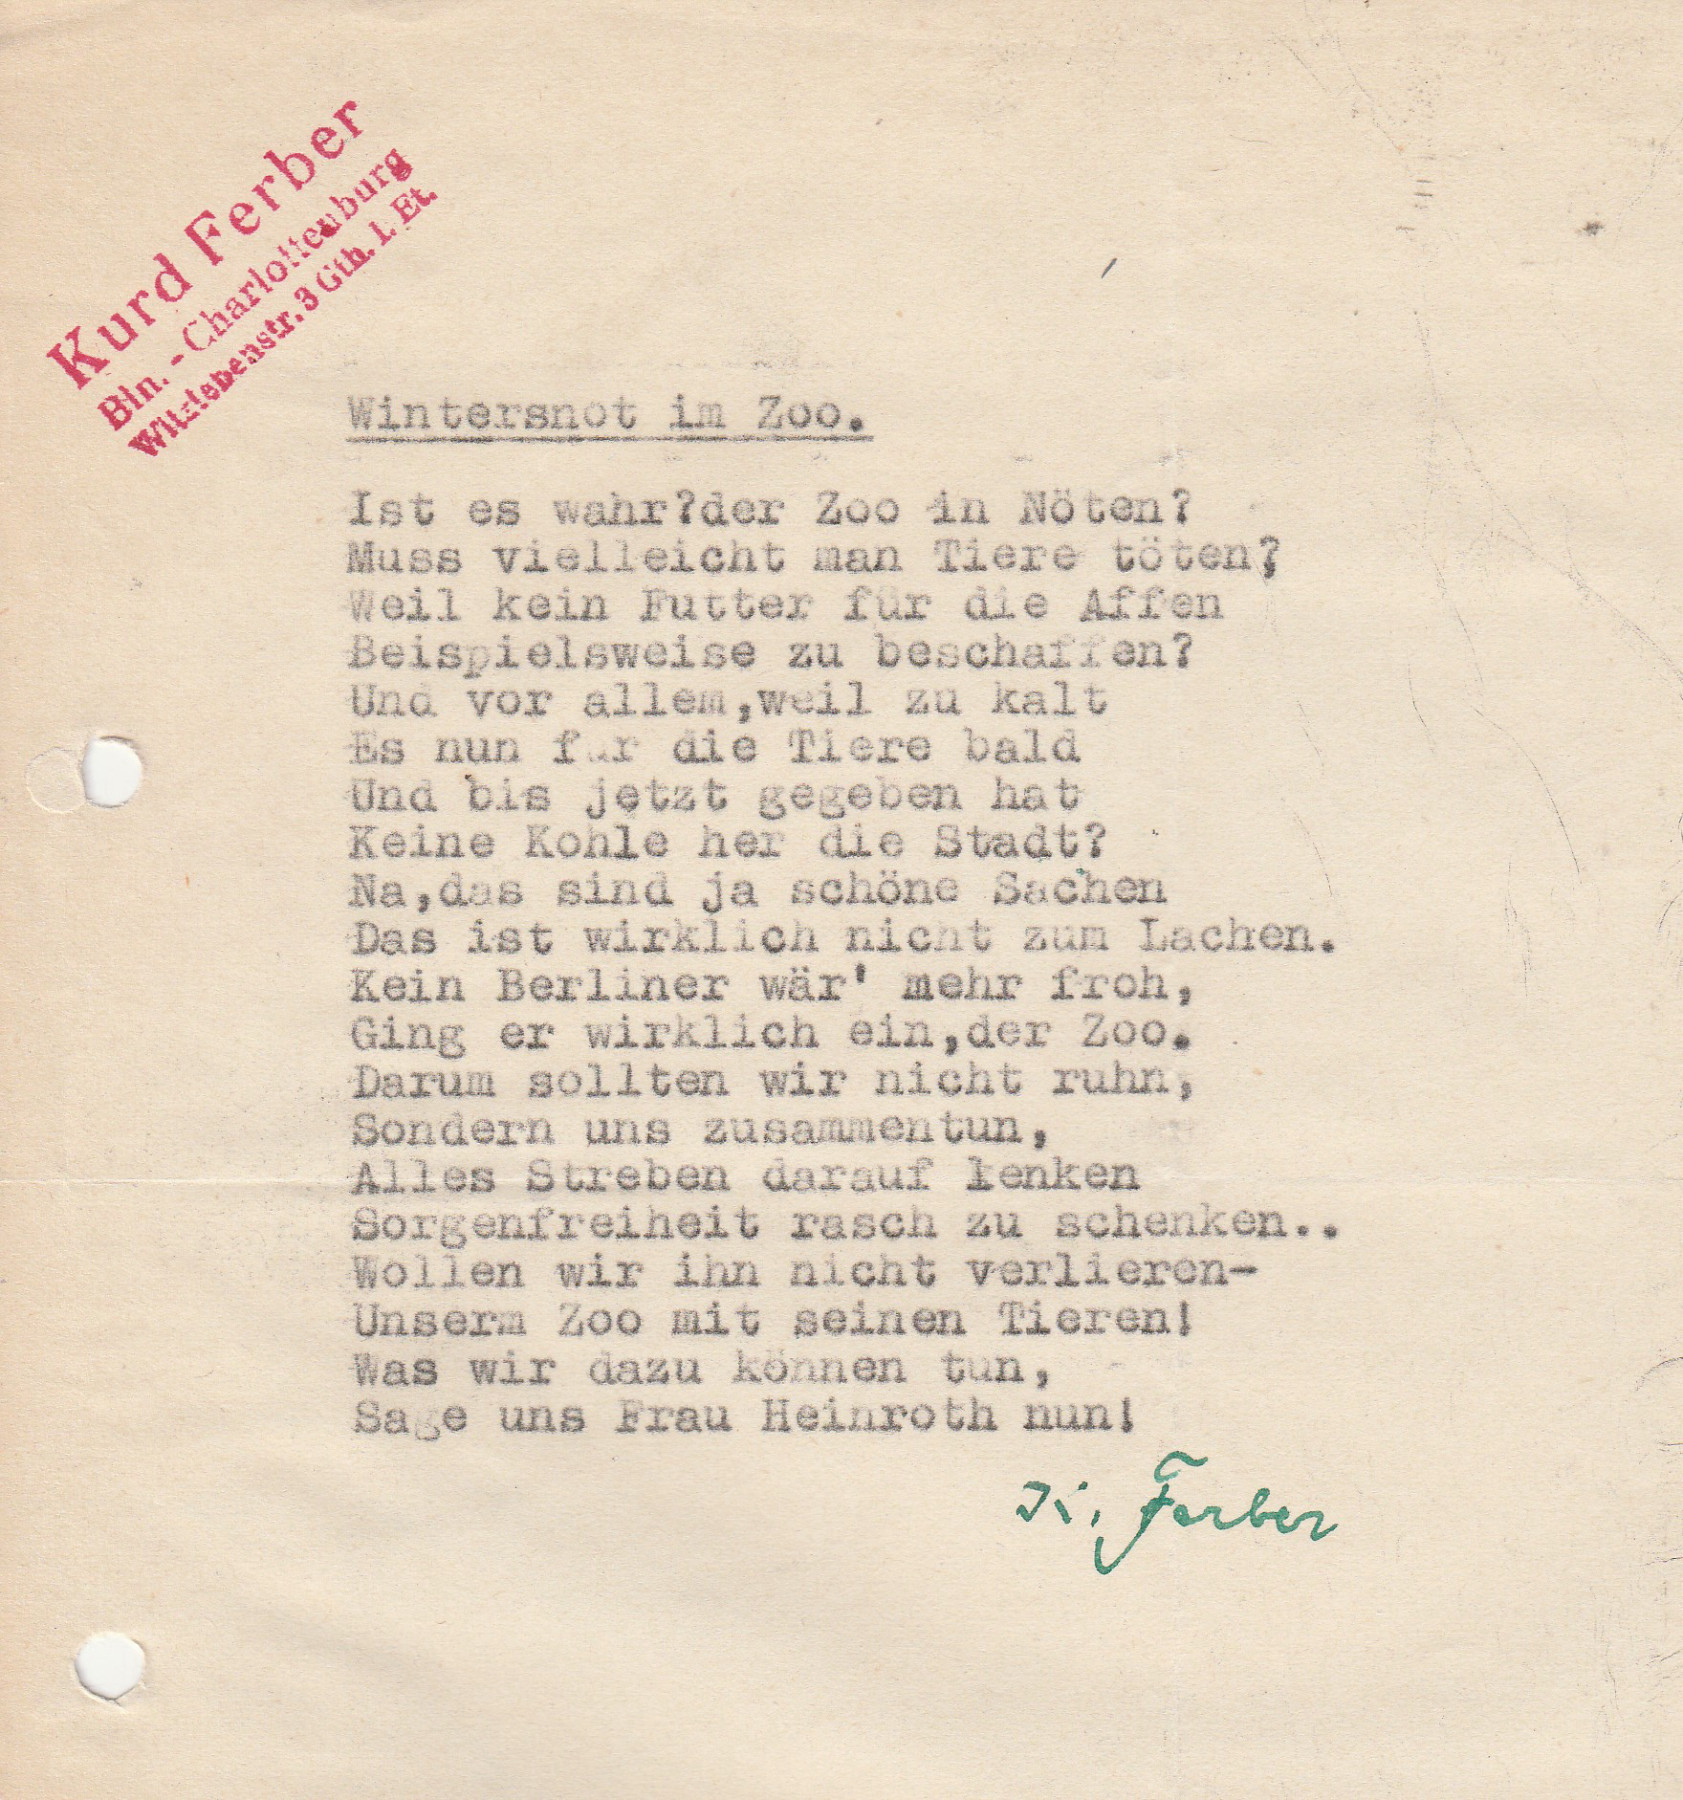 Maschinengeschriebenes Gedicht auf gelochtem Blatt mit rotem Stempel "Kurd Ferber" und grüner Unterschrift "K.Ferber". Für Transkript, siehe Link in Bildunterschrift.